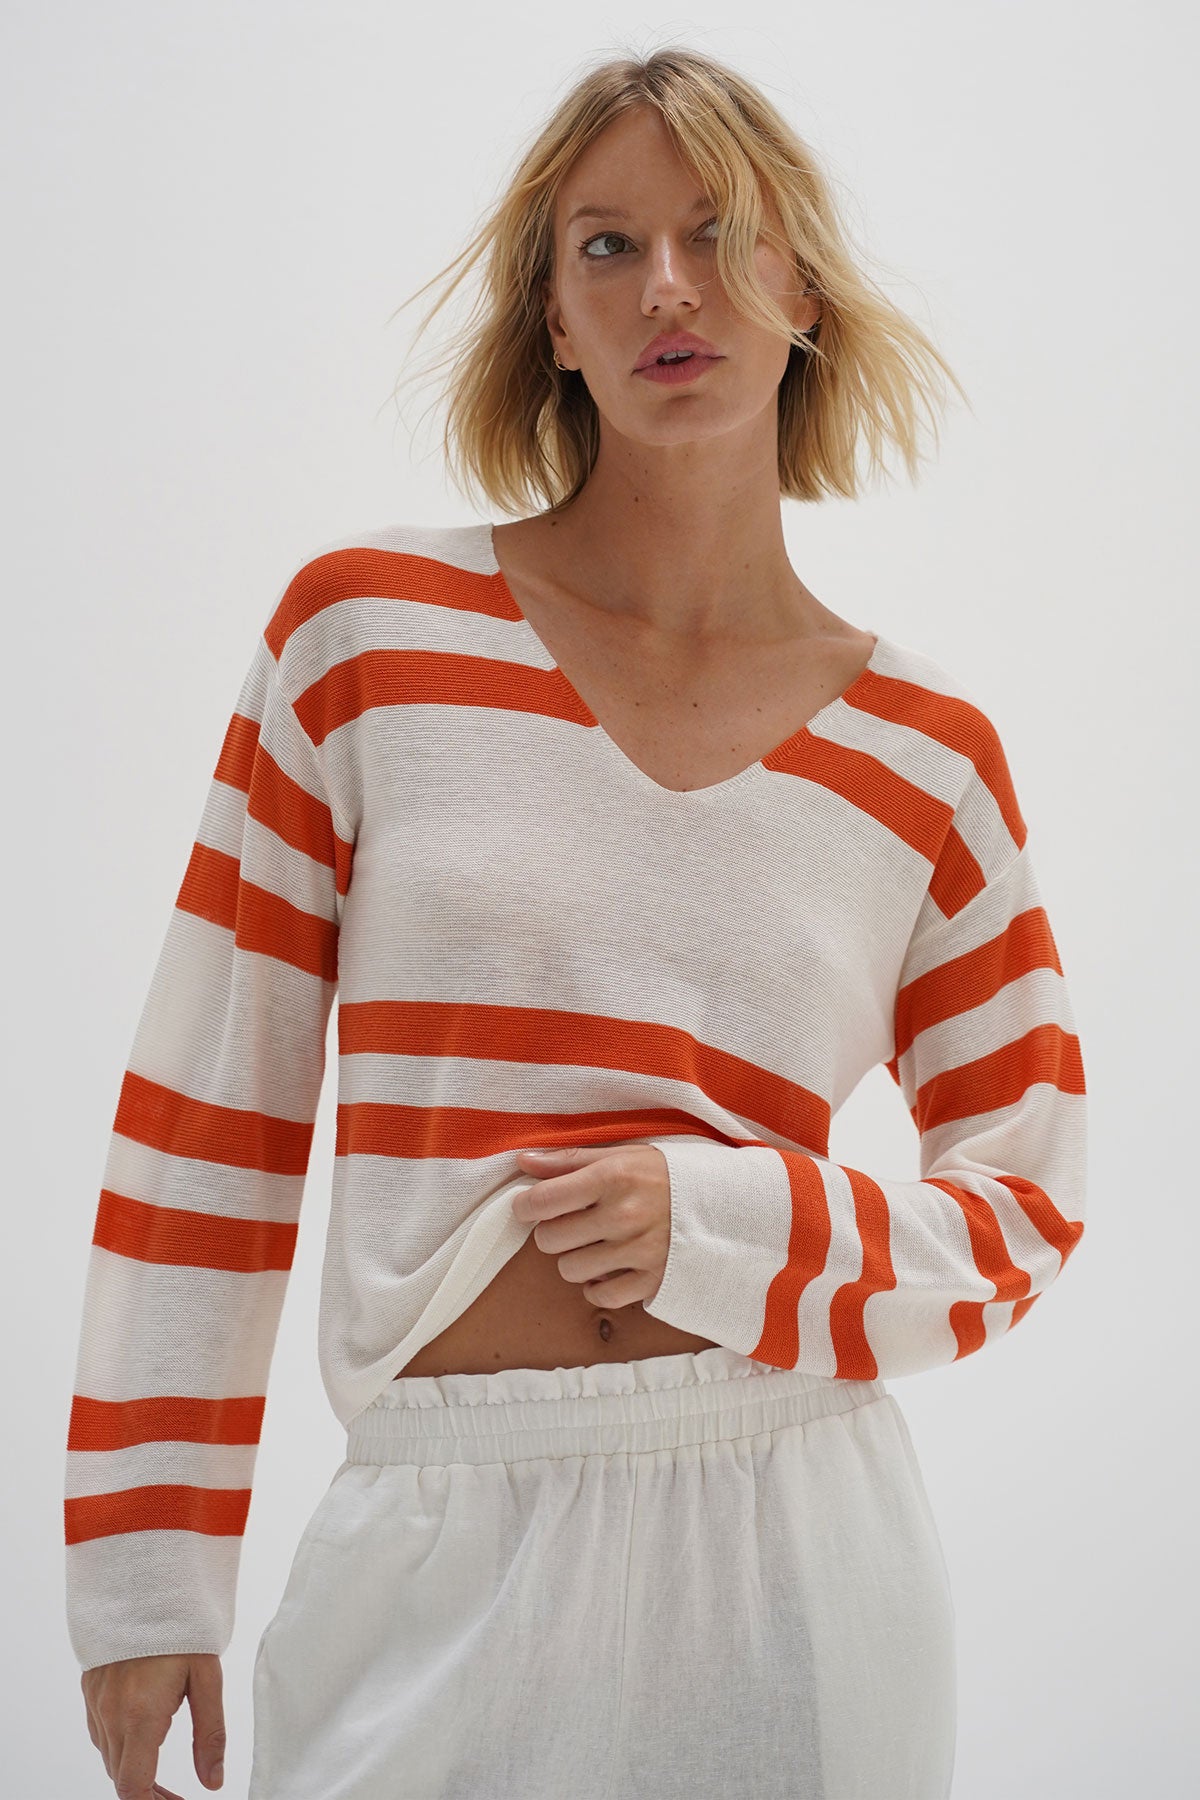 Shop LNA Hoodies & Sweatshirts | Official LNA Website – LNA Clothing